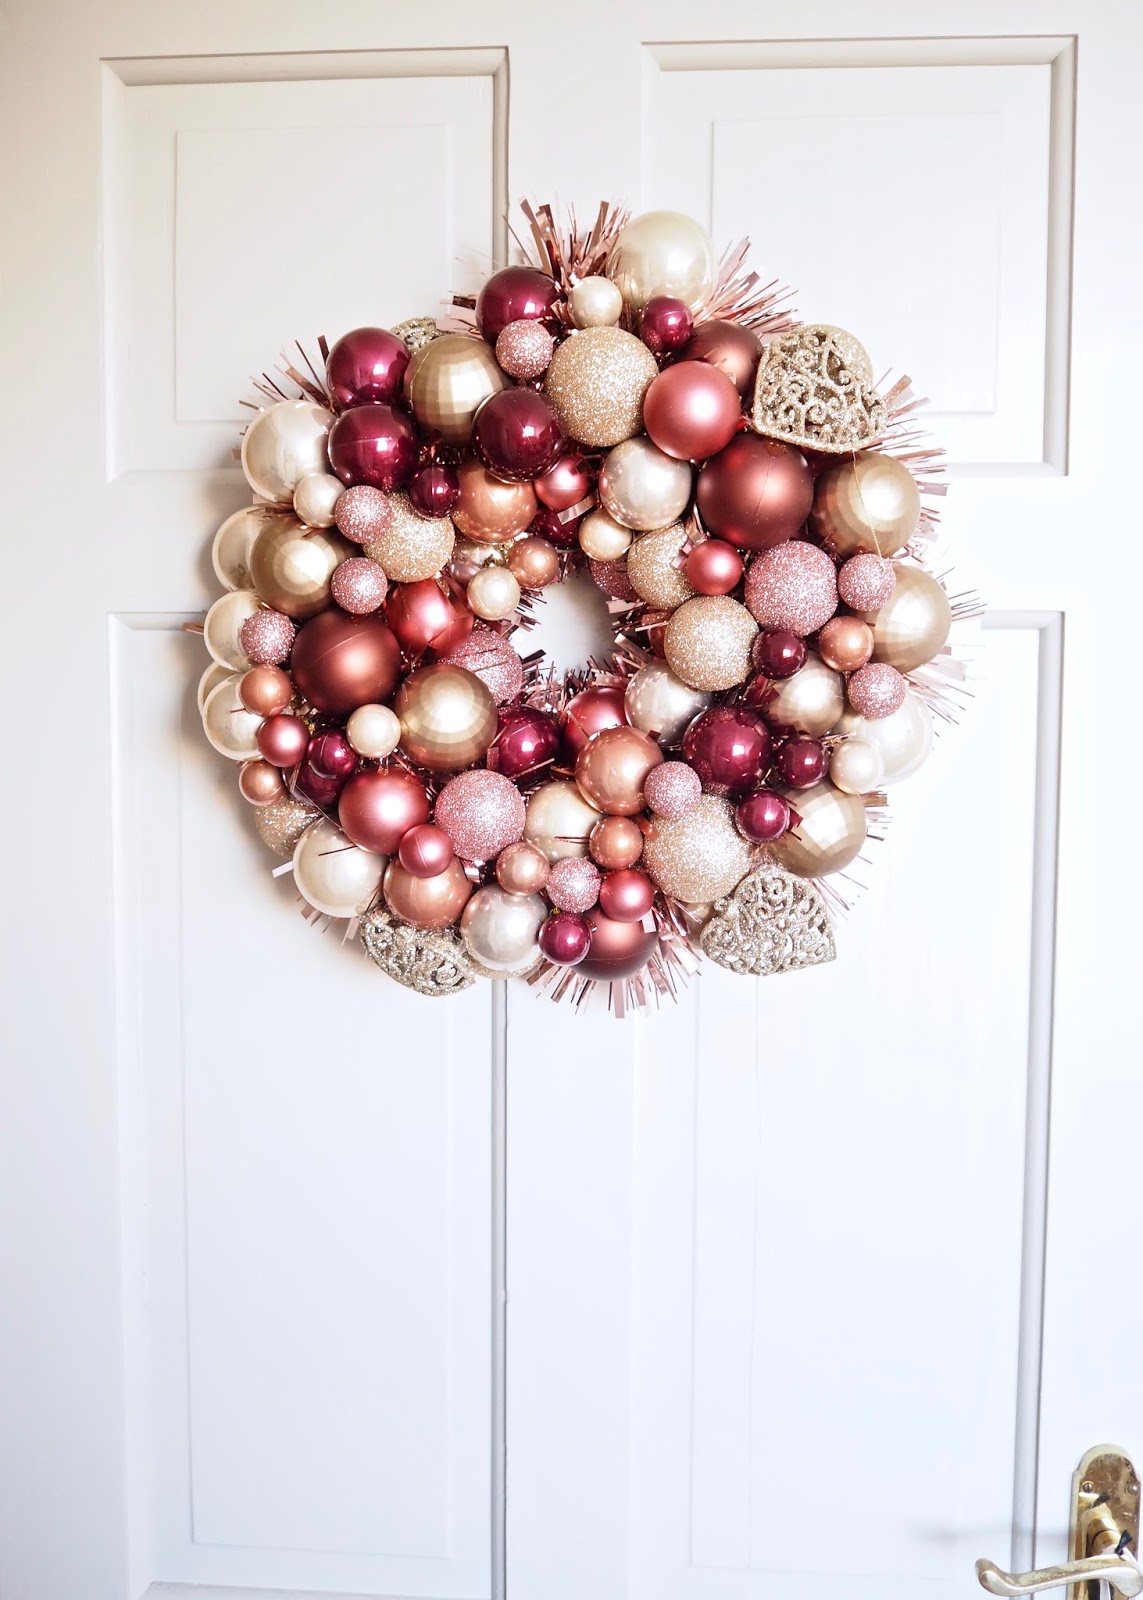 DIY stylish ornament wreath